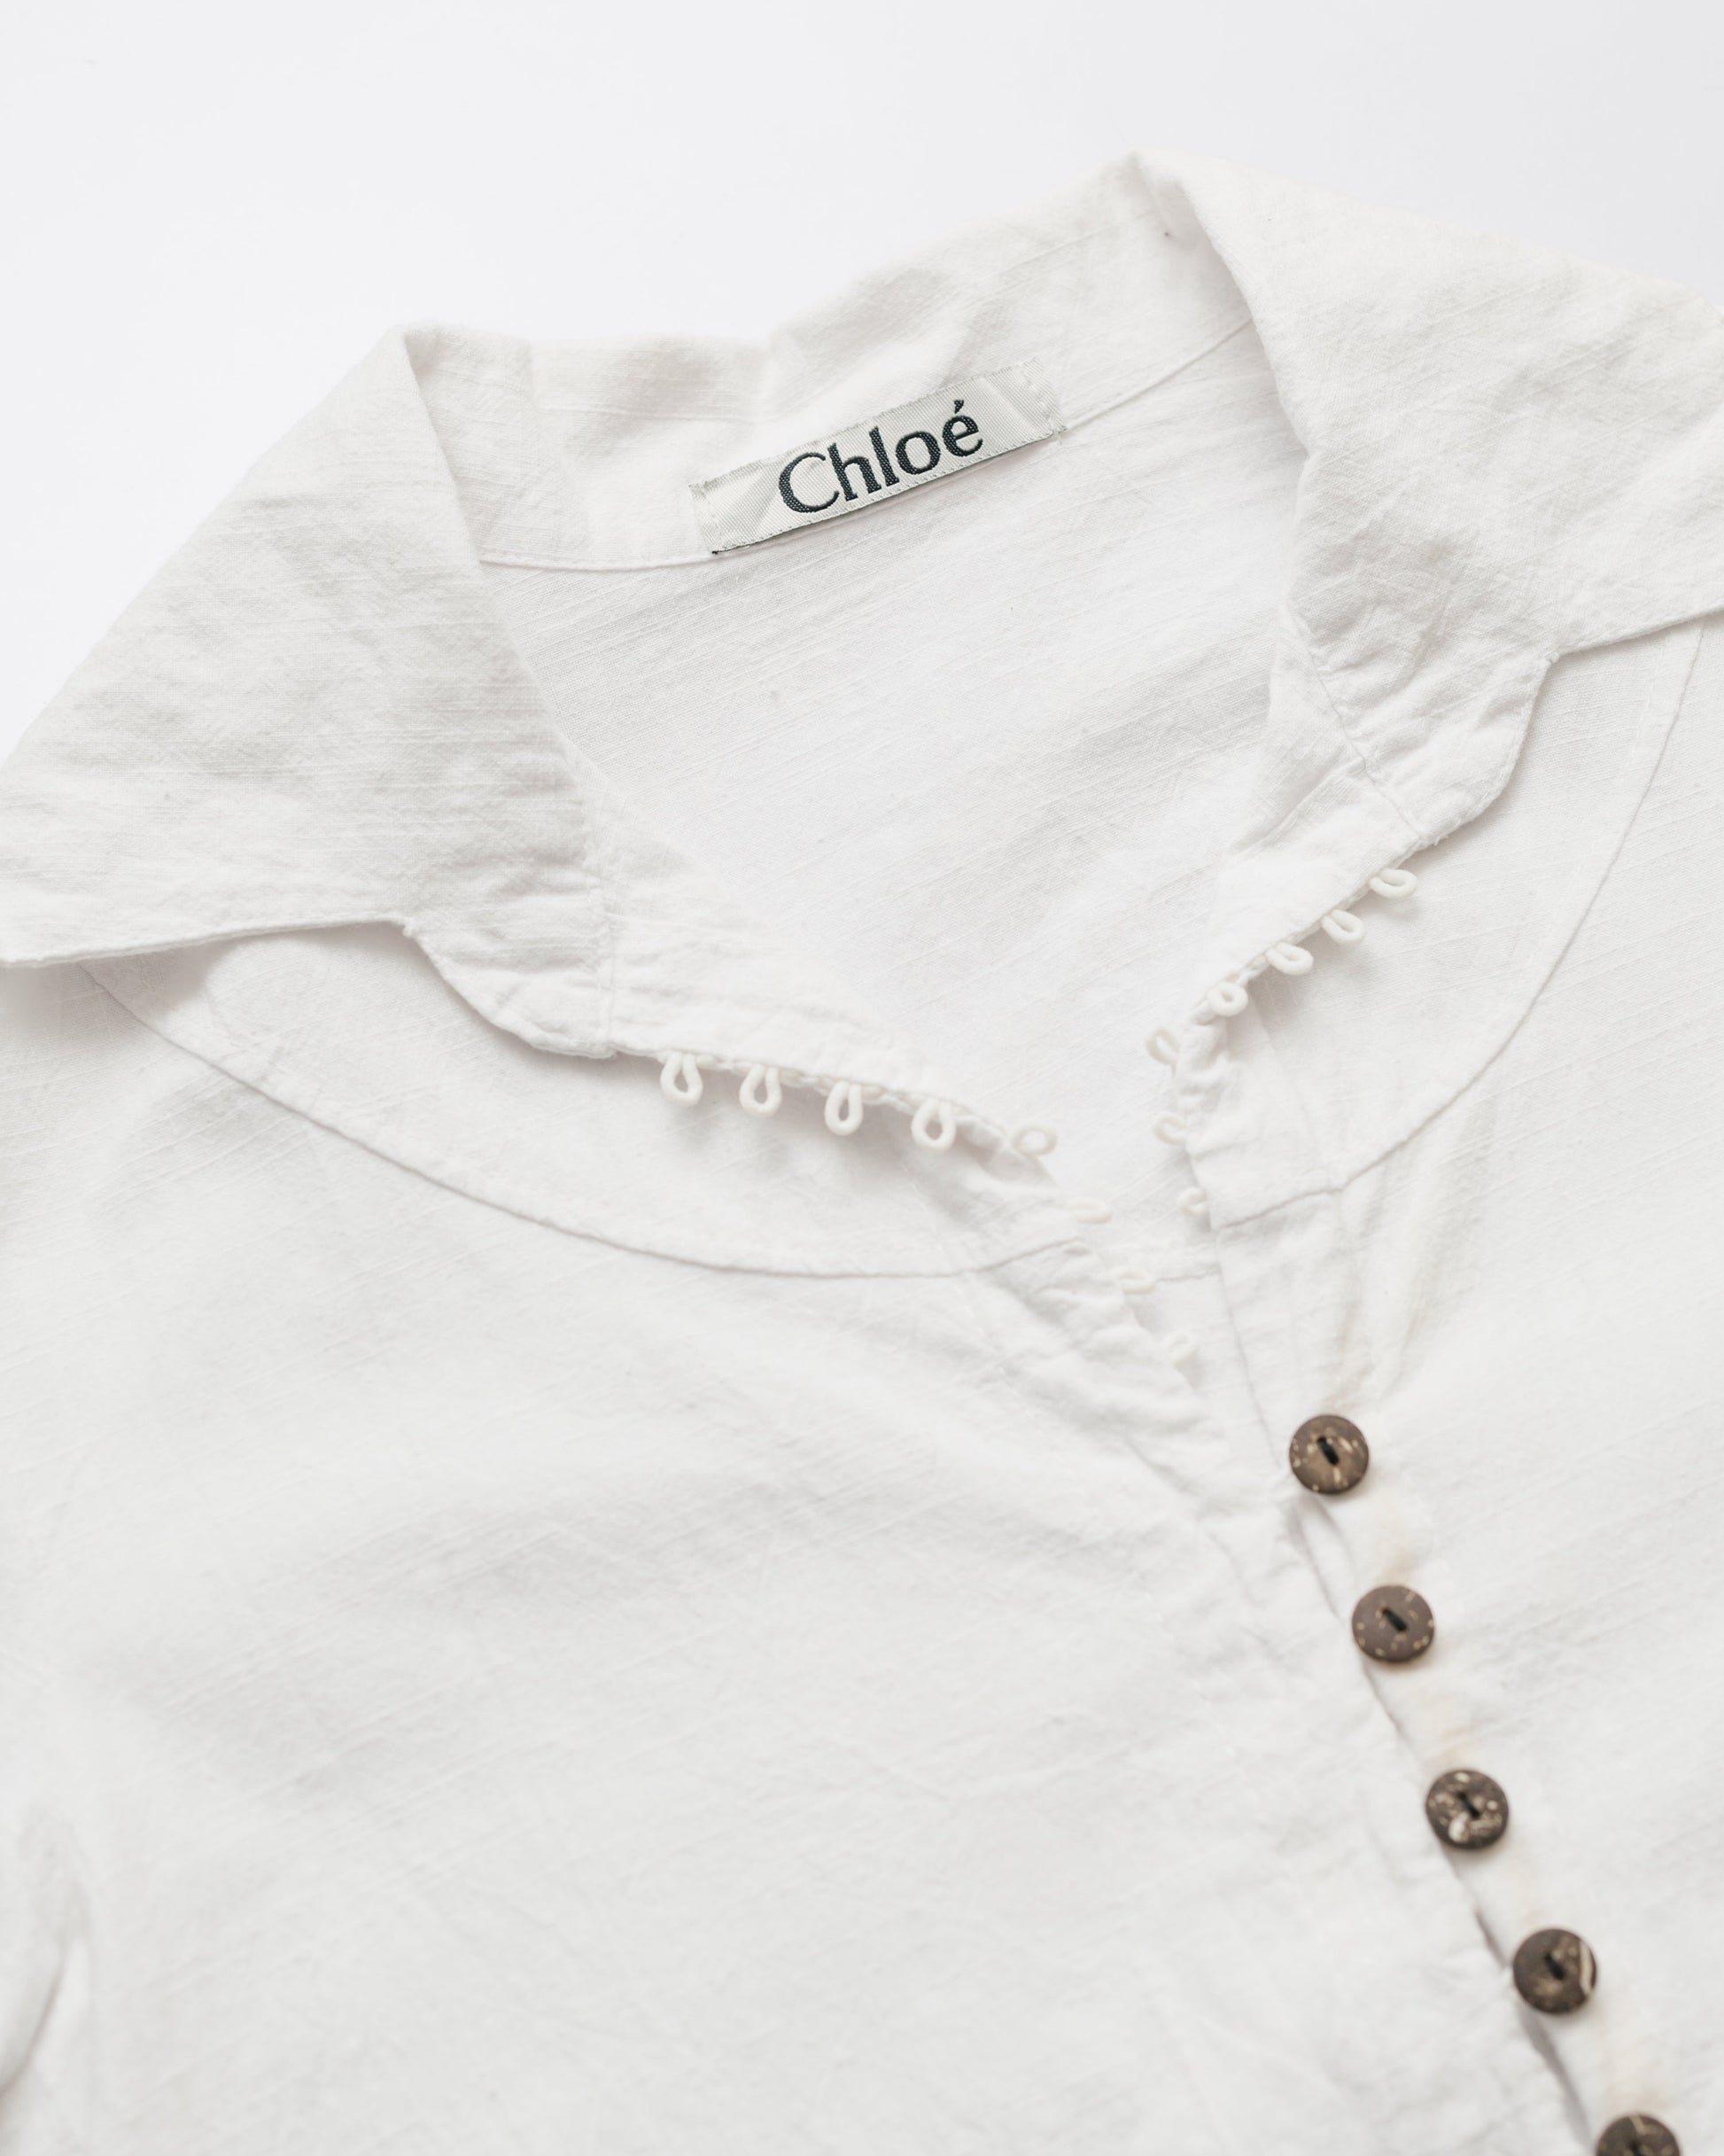 Chloé button down shirt